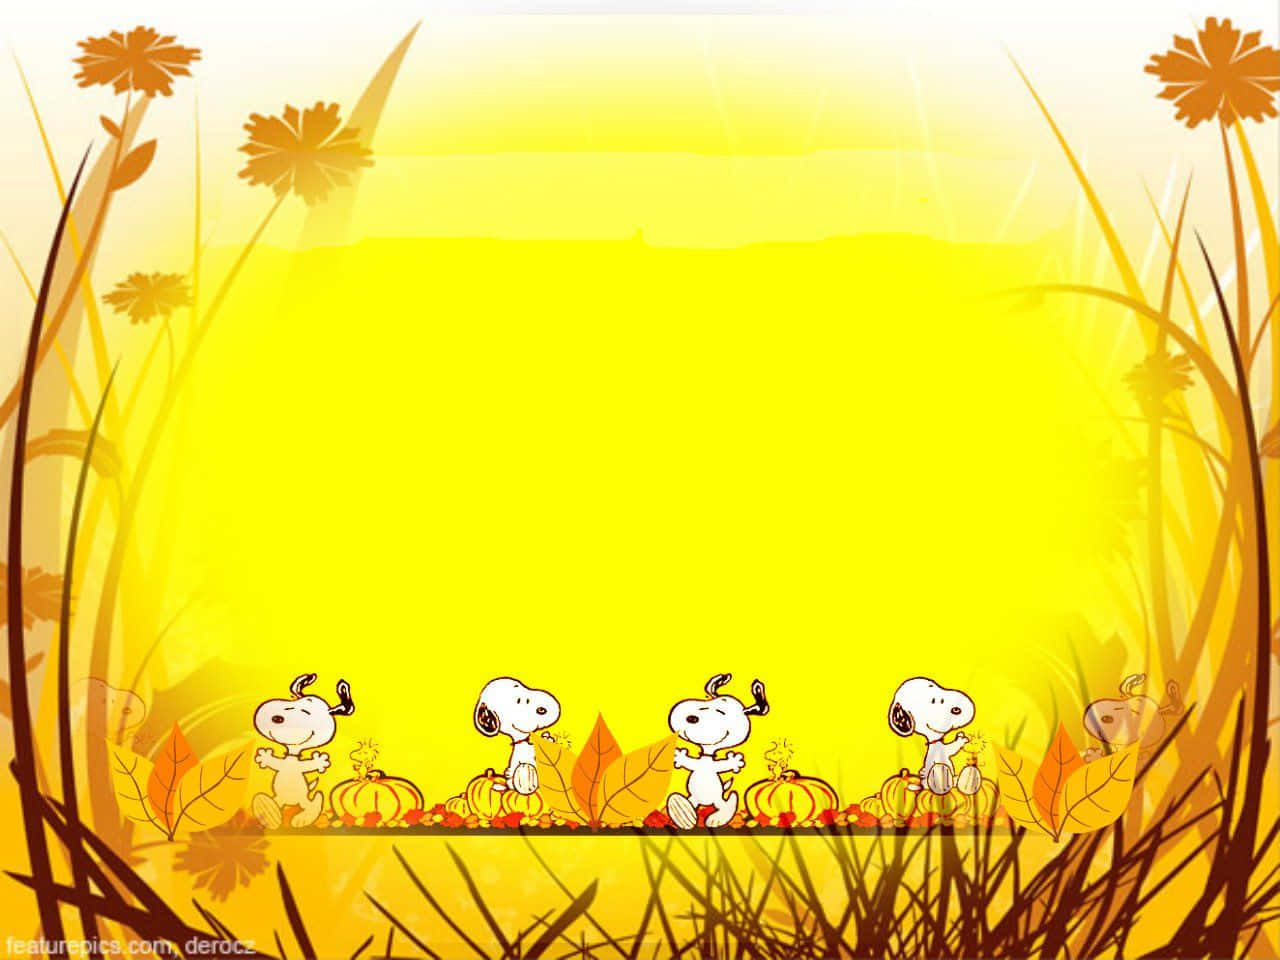 Snoopyzeigt Seine Dankbarkeit An Diesem Erntedankfest. Wallpaper